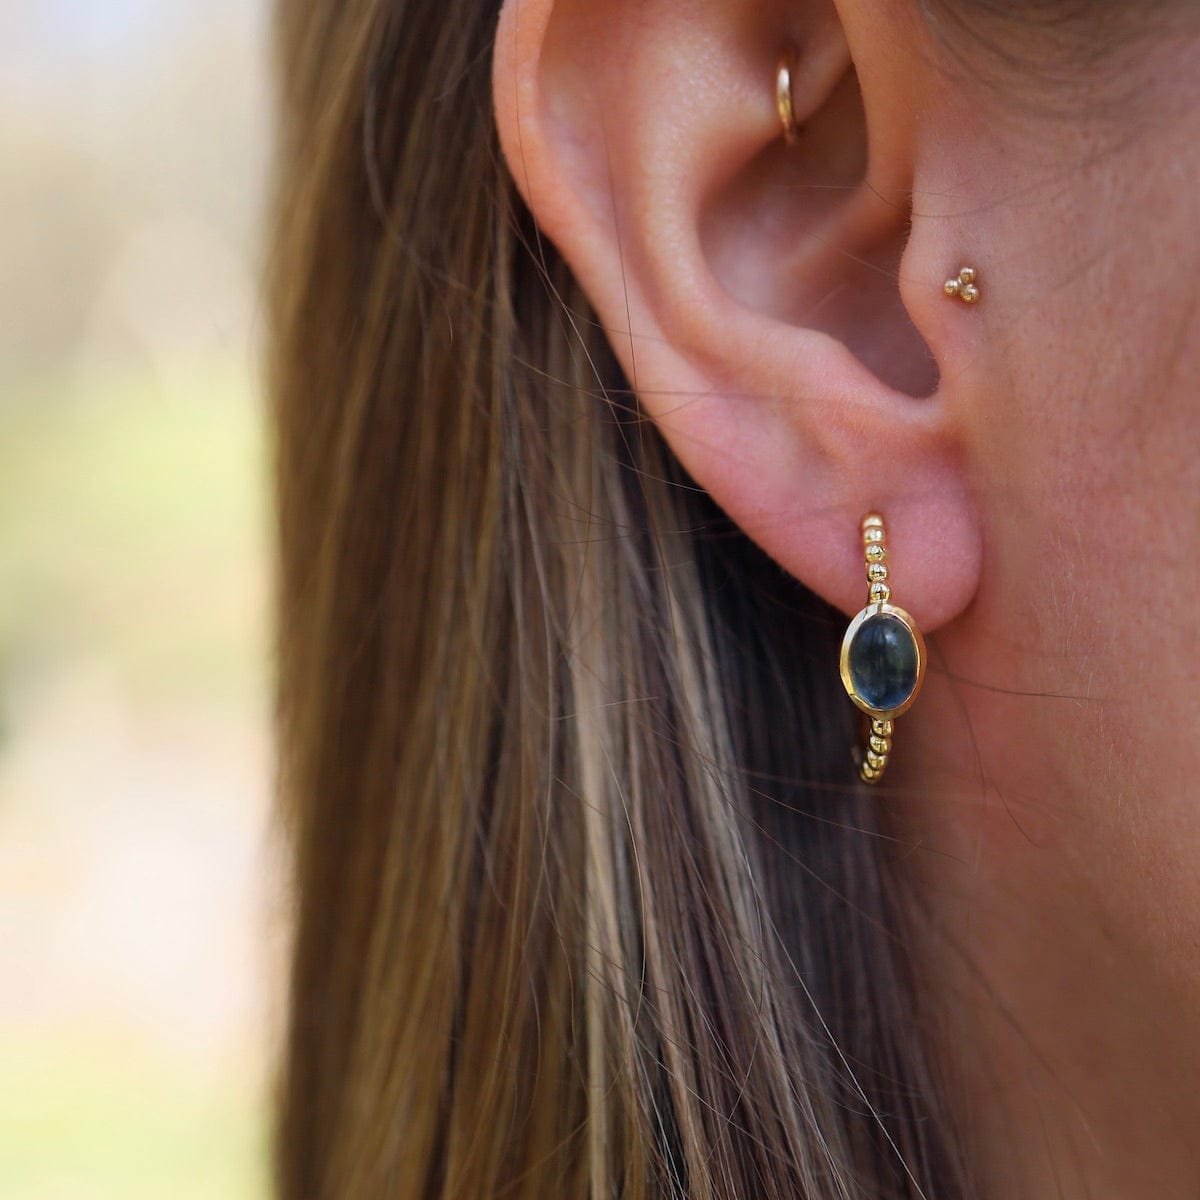 EAR-GPL Gold Hoop Earrings with Blue Iolite